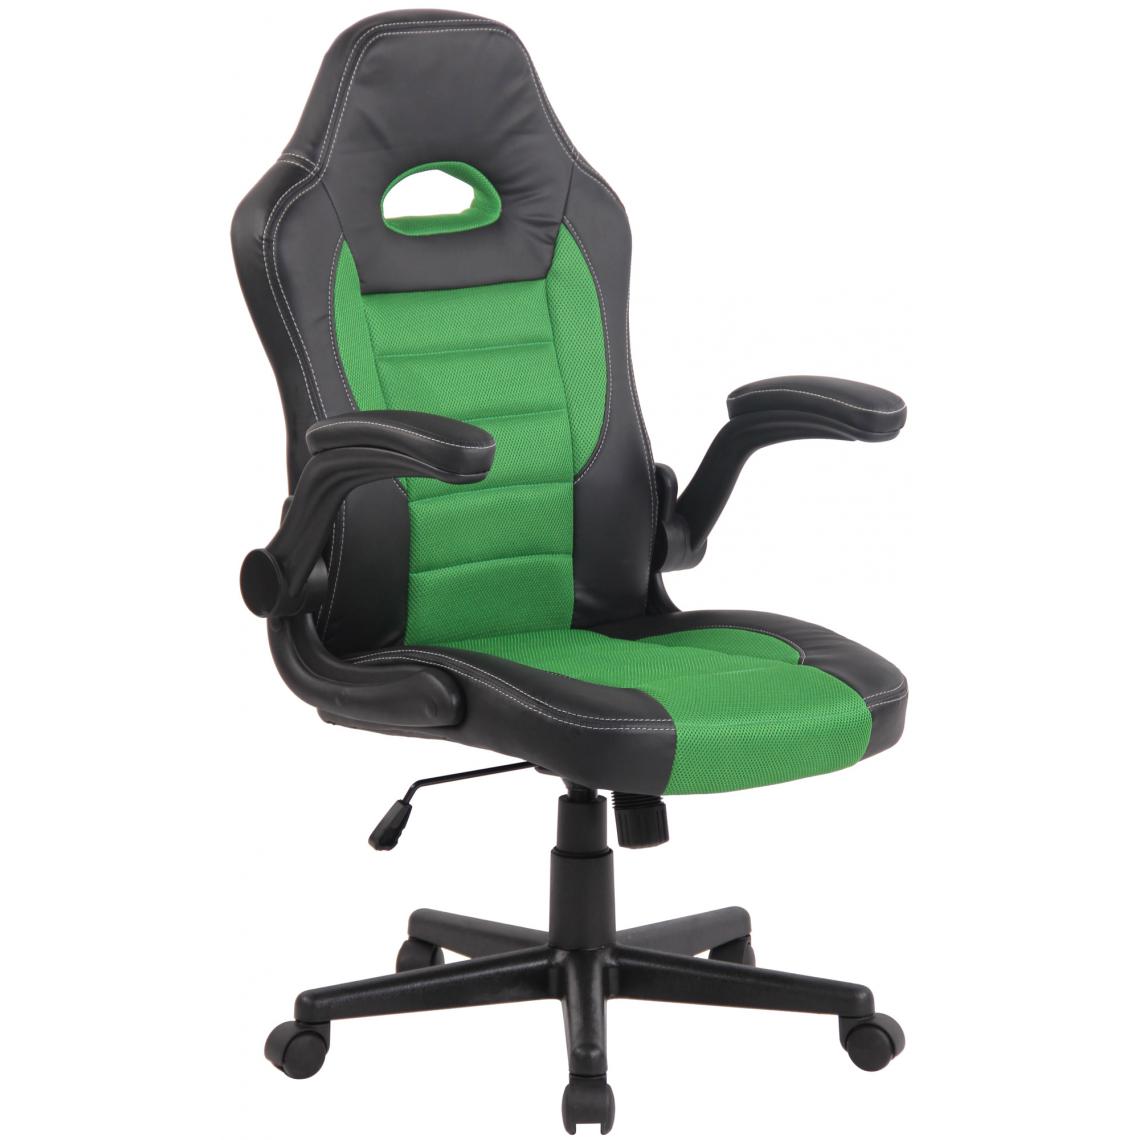 Icaverne - Inedit Chaise de bureau categorie Harare noir couleur vert - Chaises